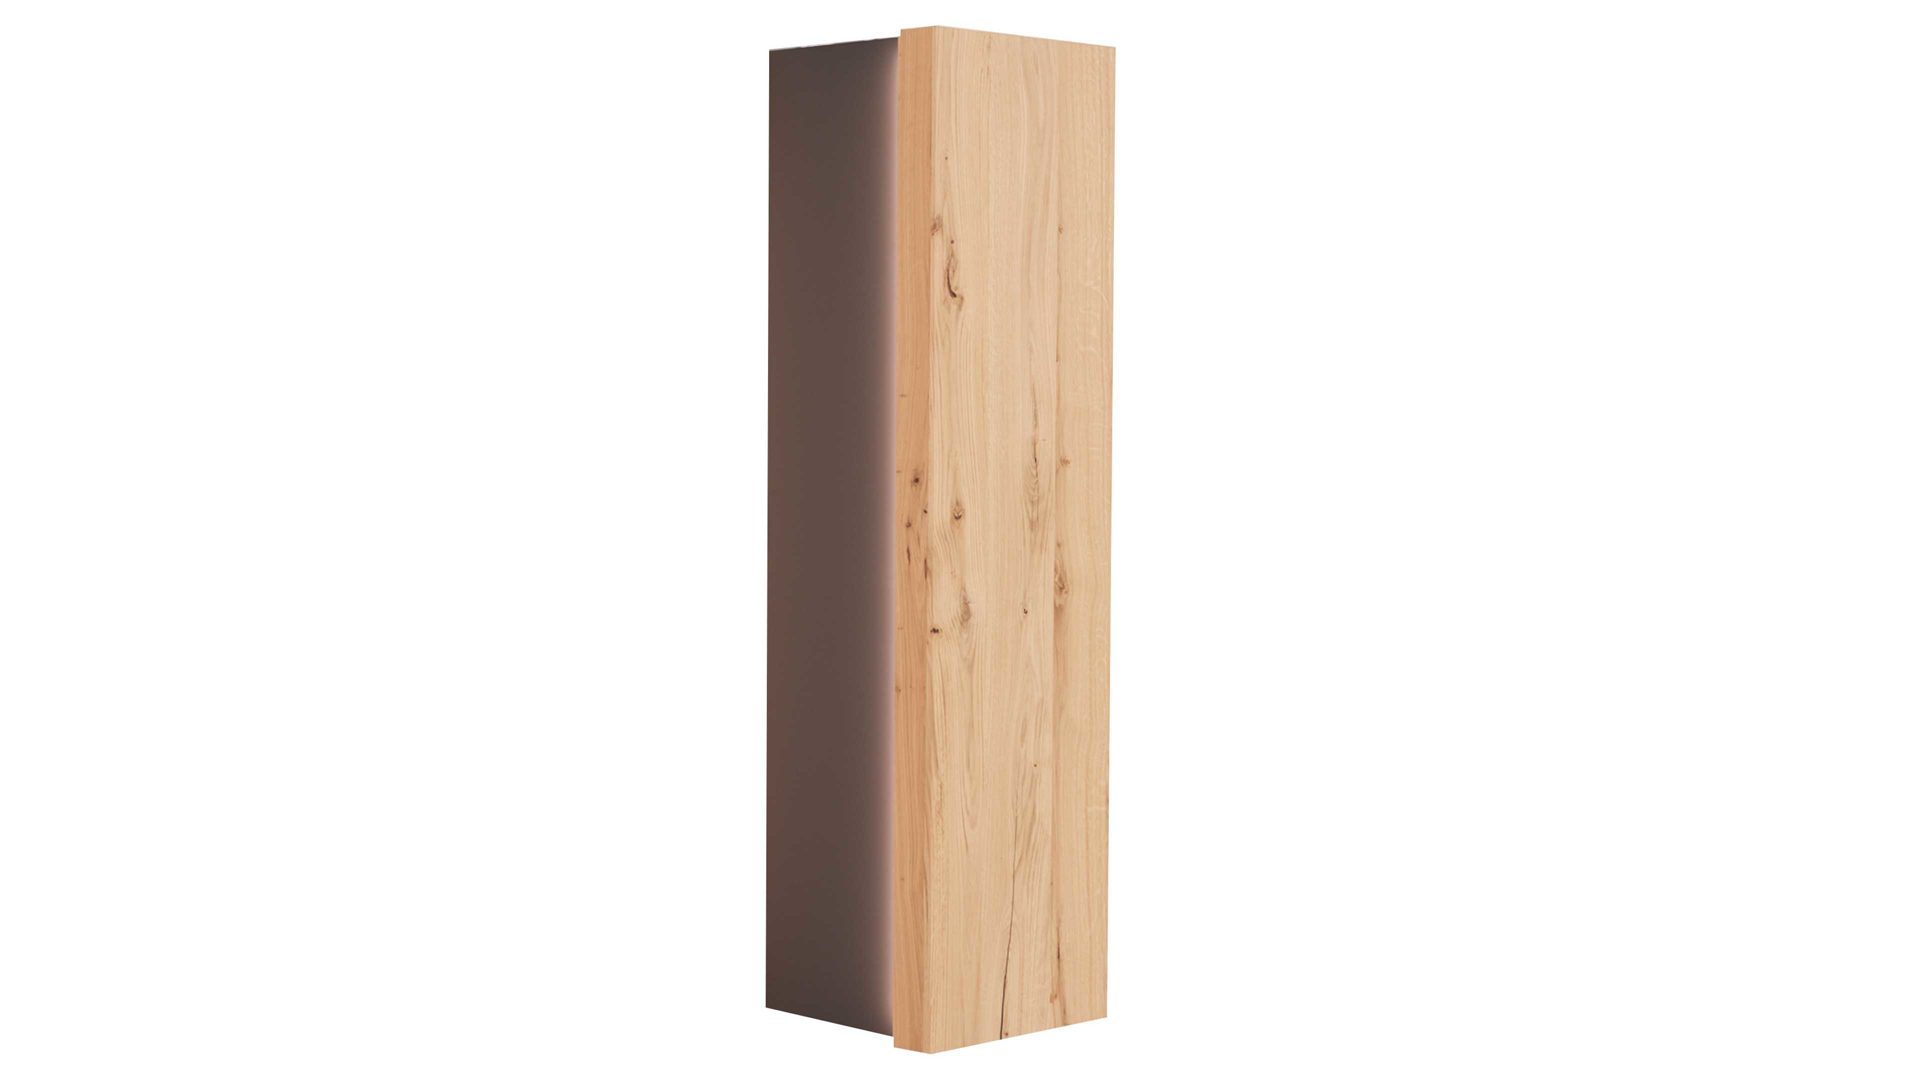 Hängeschrank Interliving aus Holz in Weiß Interliving Wohnzimmer Serie 2103 – Hängeelement 560746 Schiefer Schwarz & Asteiche – eine rechte Tür, Höhe ca. 151 cm